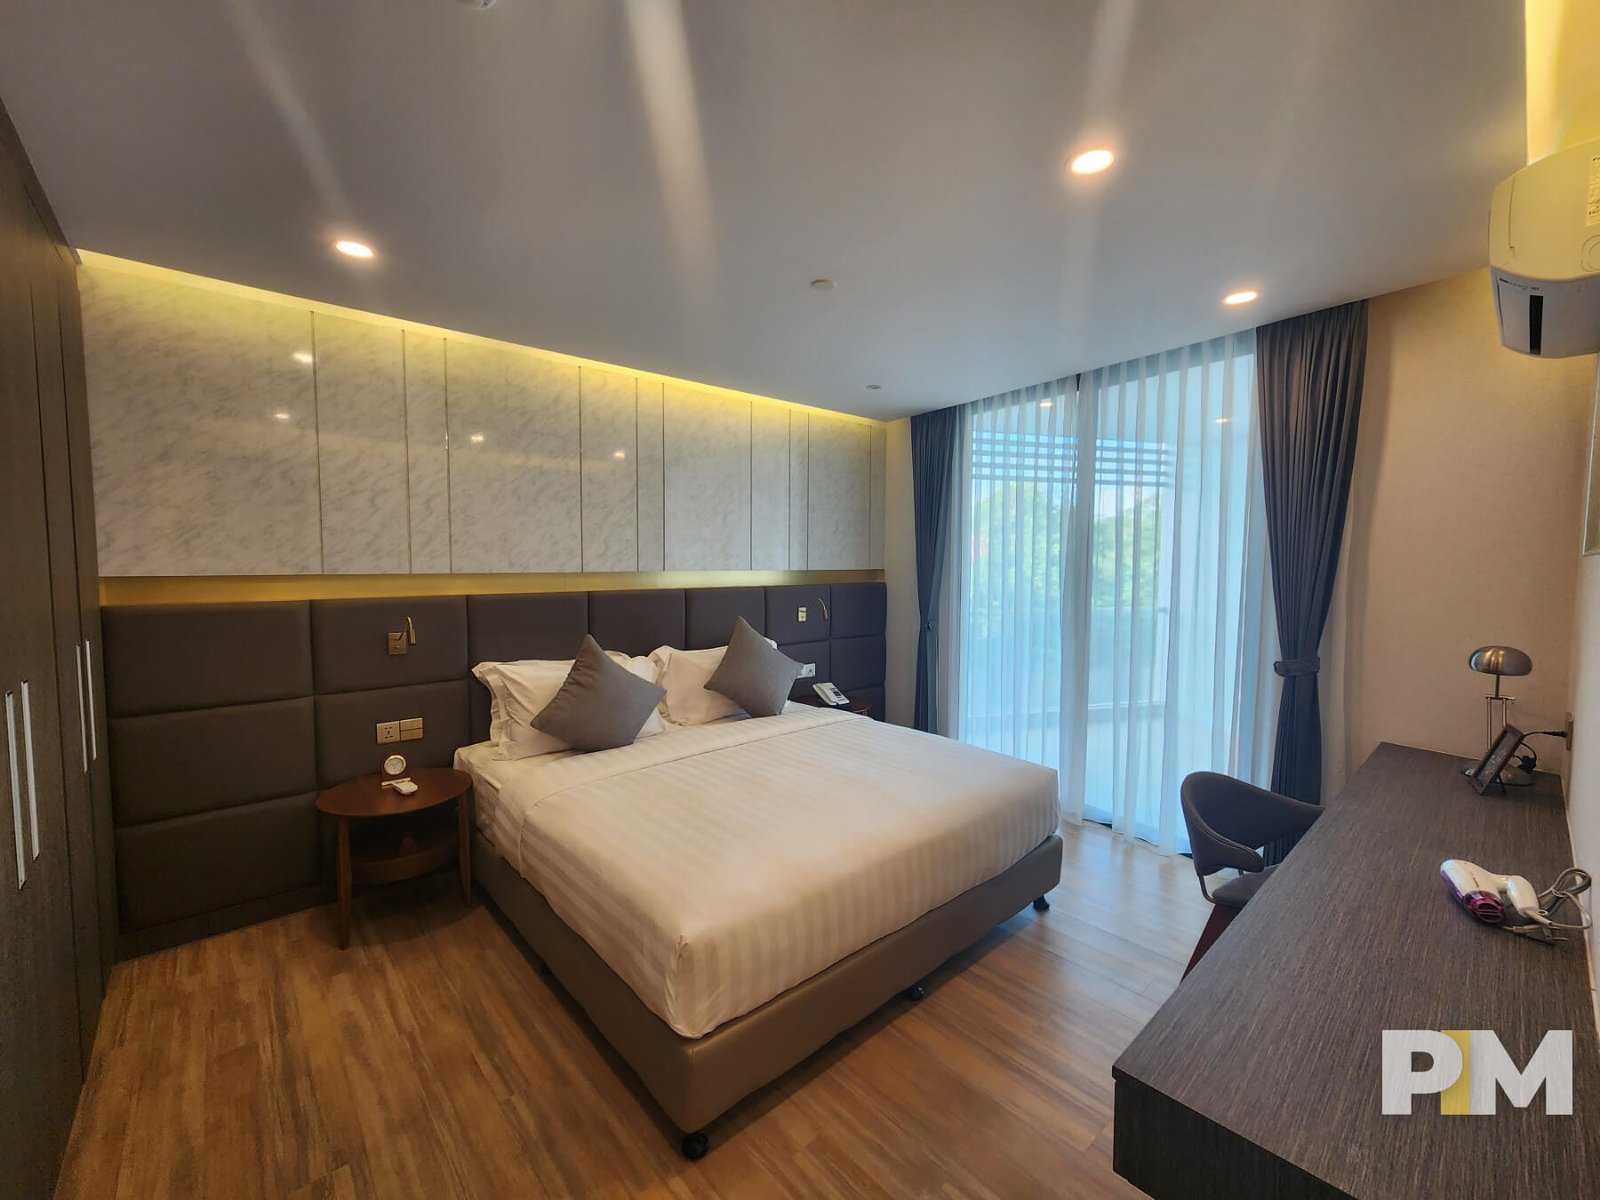 Bedroom - Myanmar Real Esetate